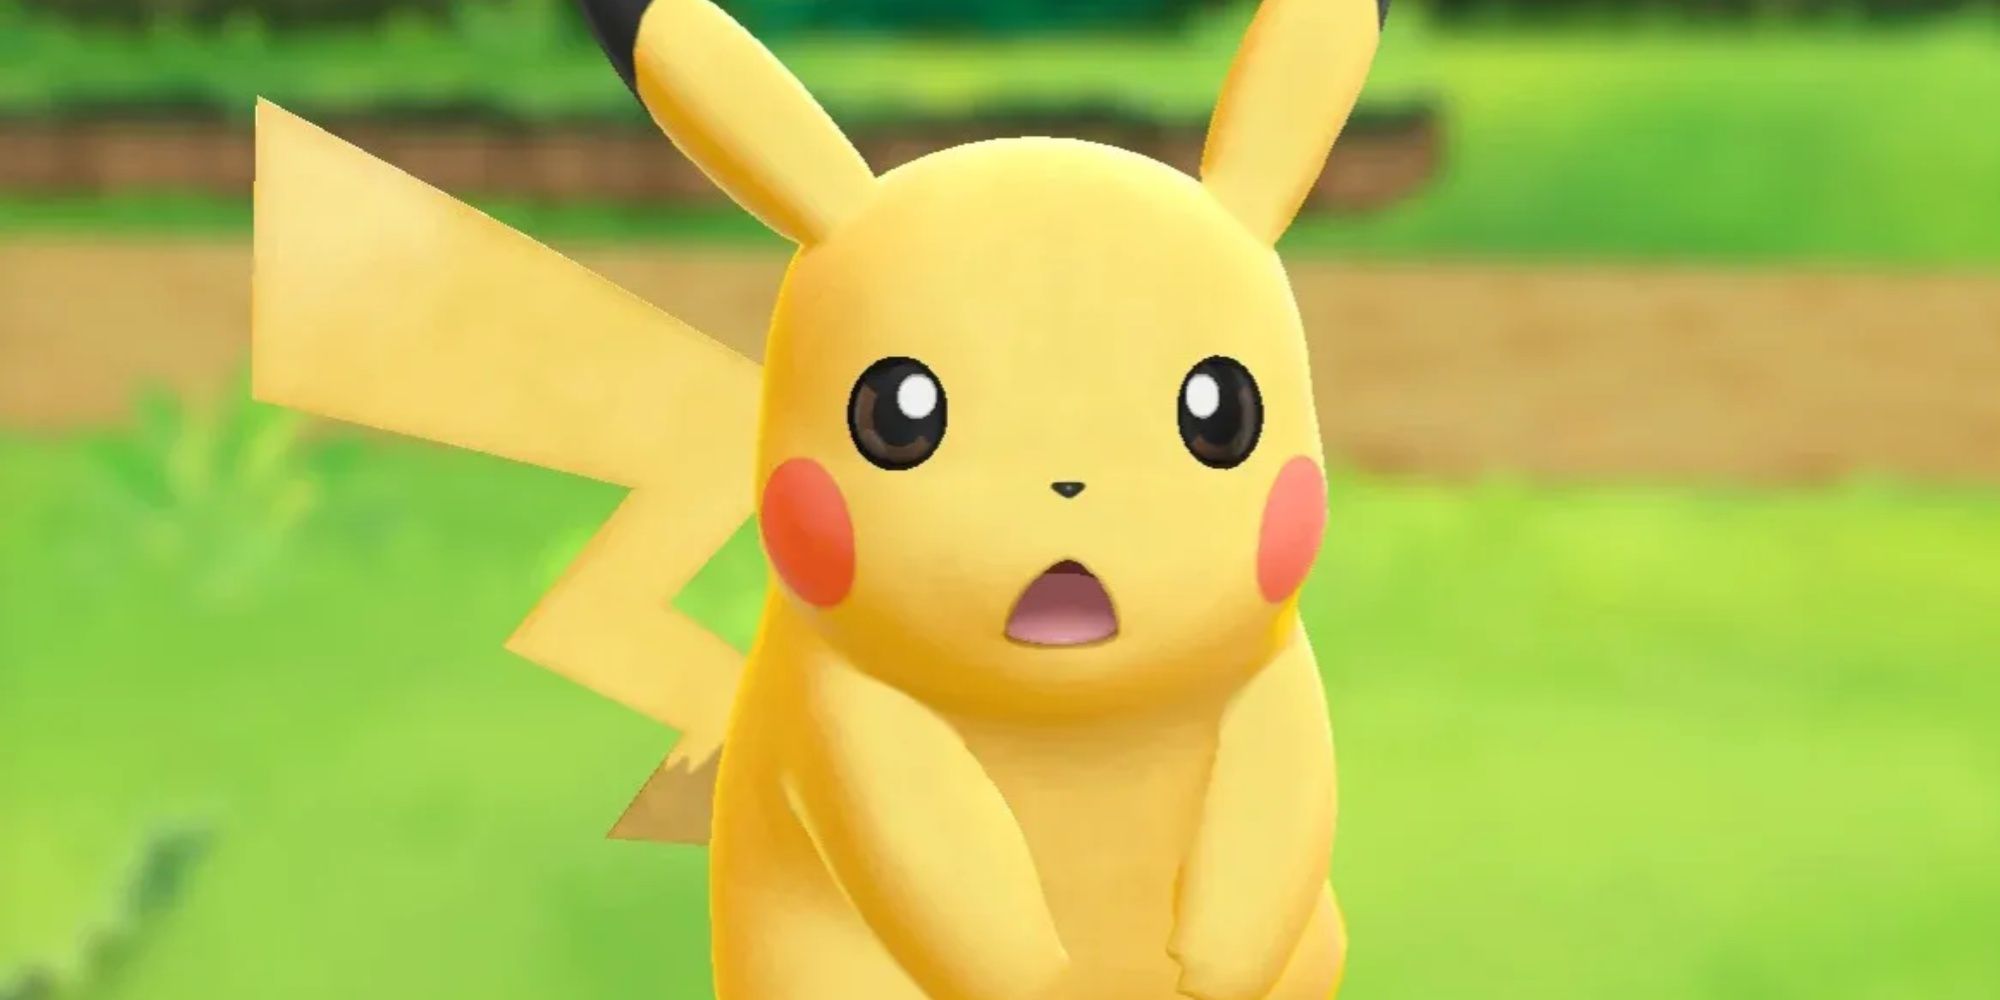 shocked pikachu in pokemon let's go